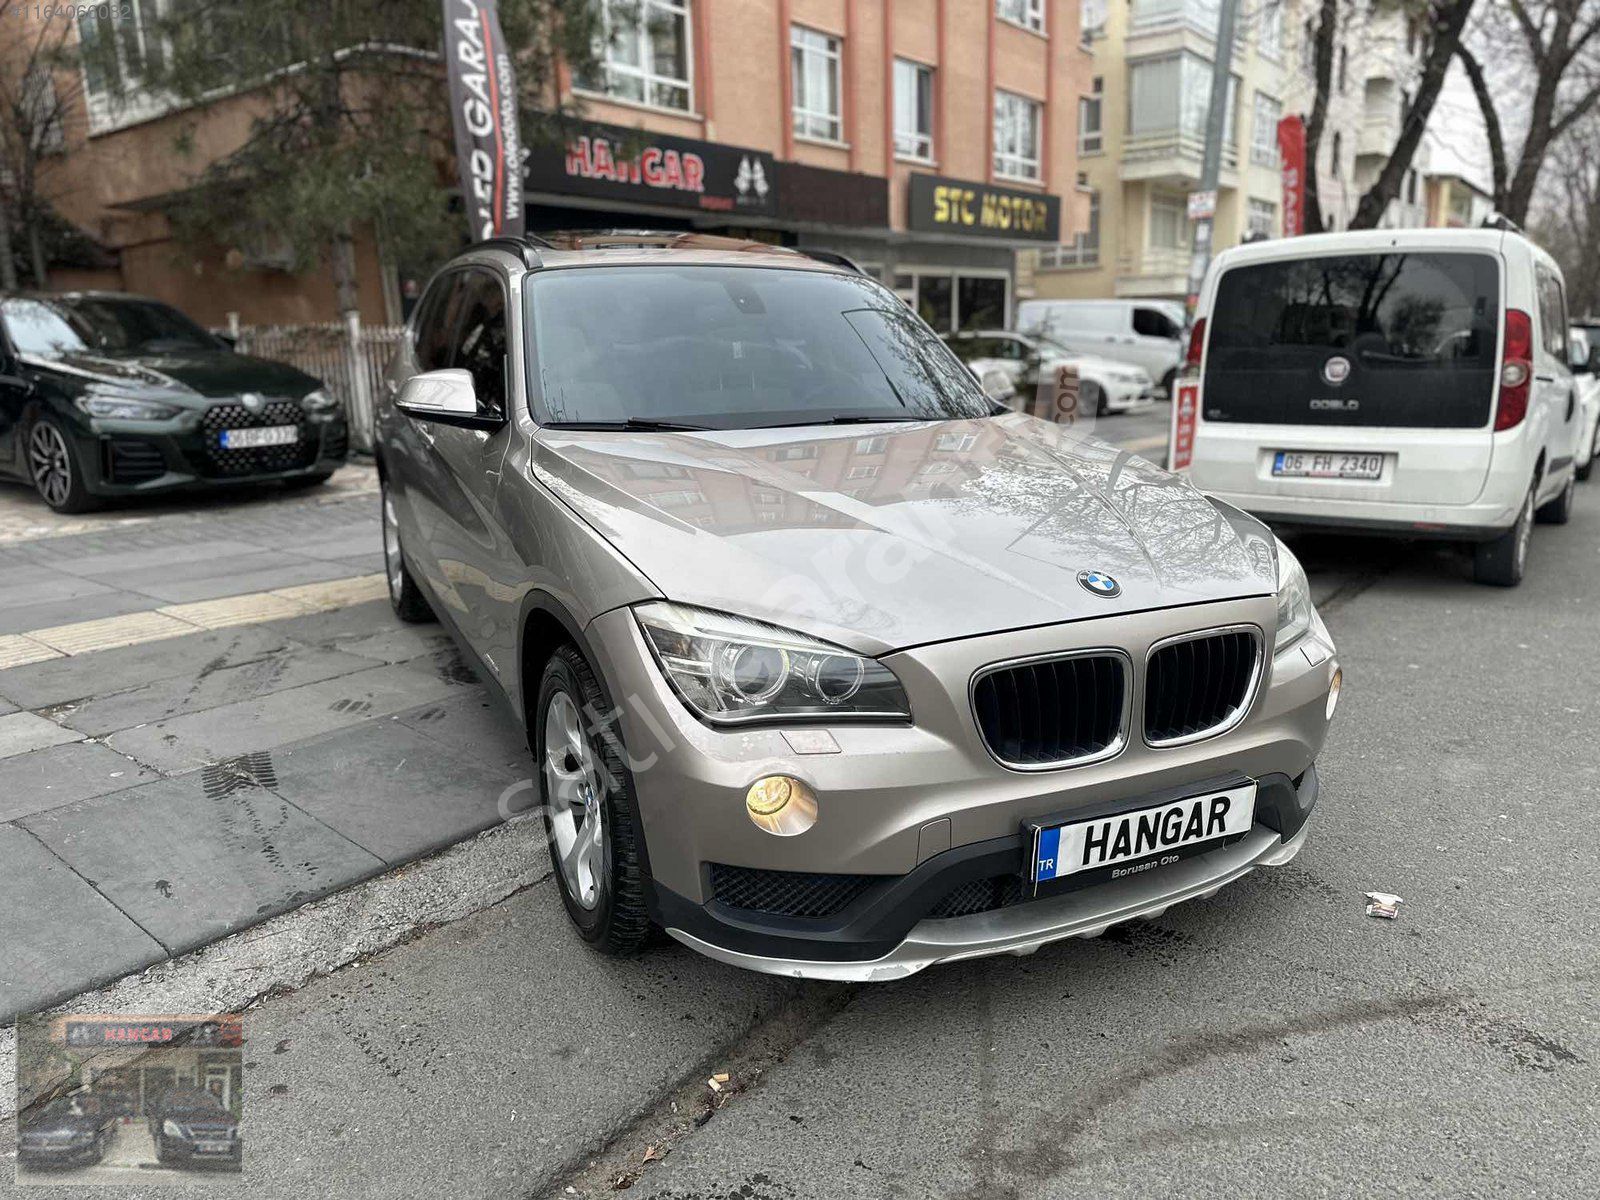 HANGAR|BMW X1 HATASIZ ÖZEL RENK